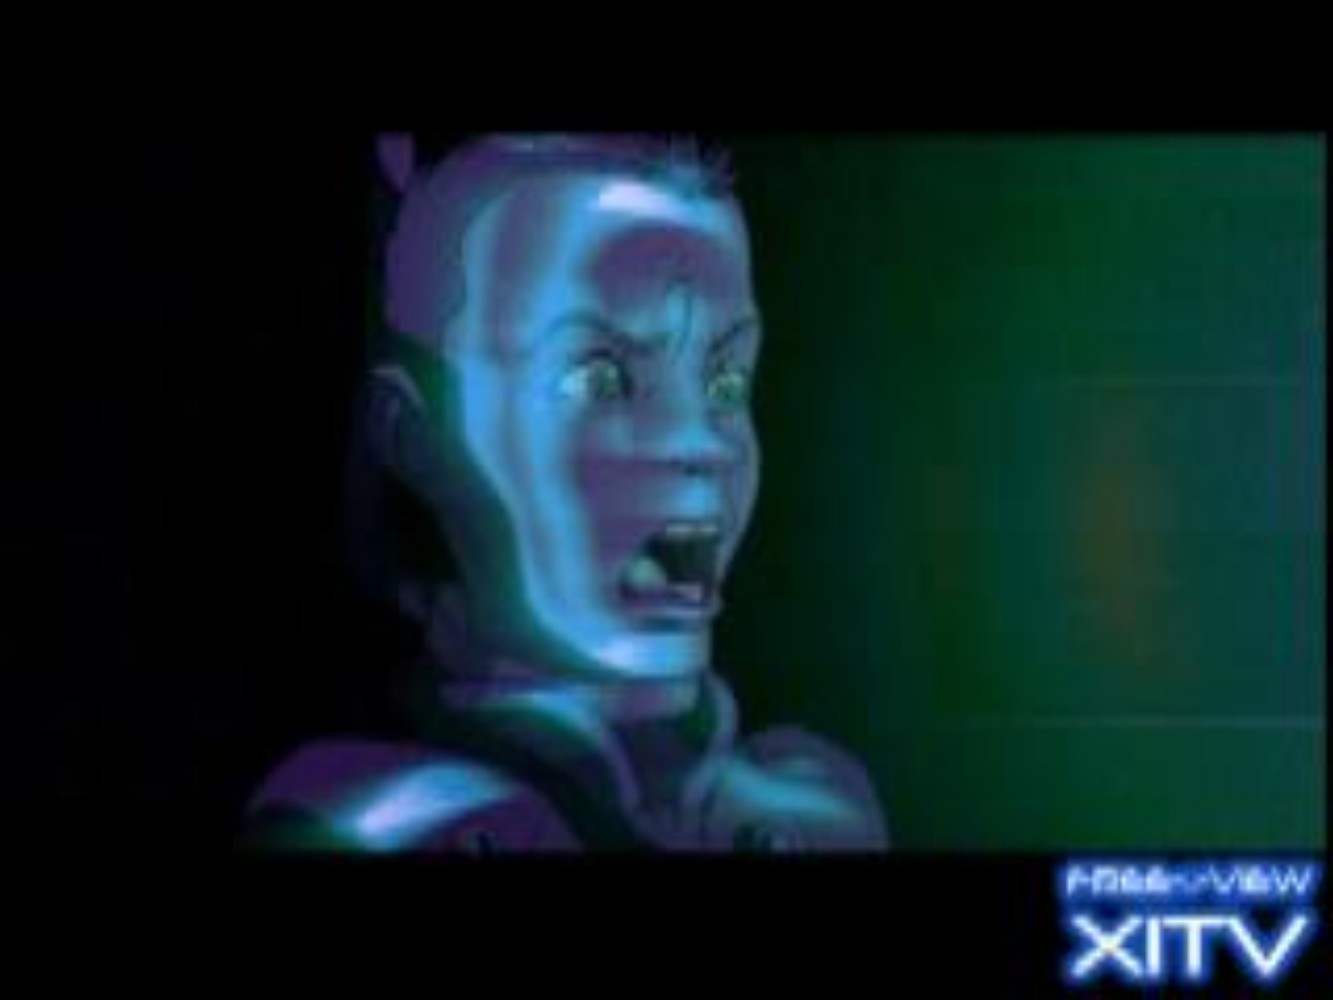 XITV FREE <> VIEW™ The Matrix! Starring Jada Pinckett! XITV Is Must See TV!